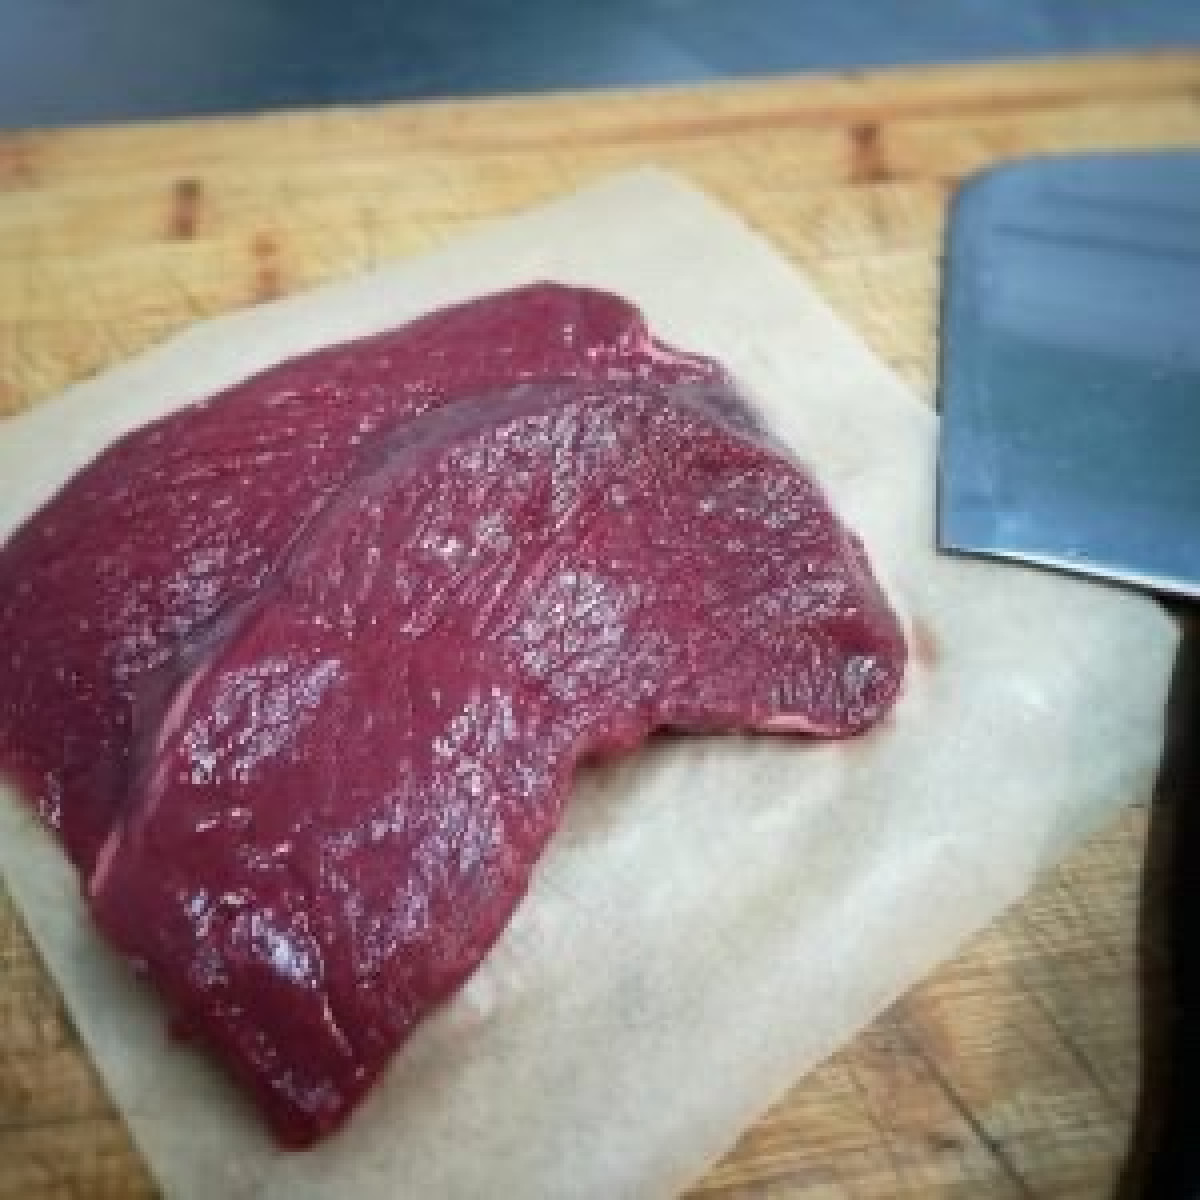 Product picture for Venison haunch steaks - FROZEN